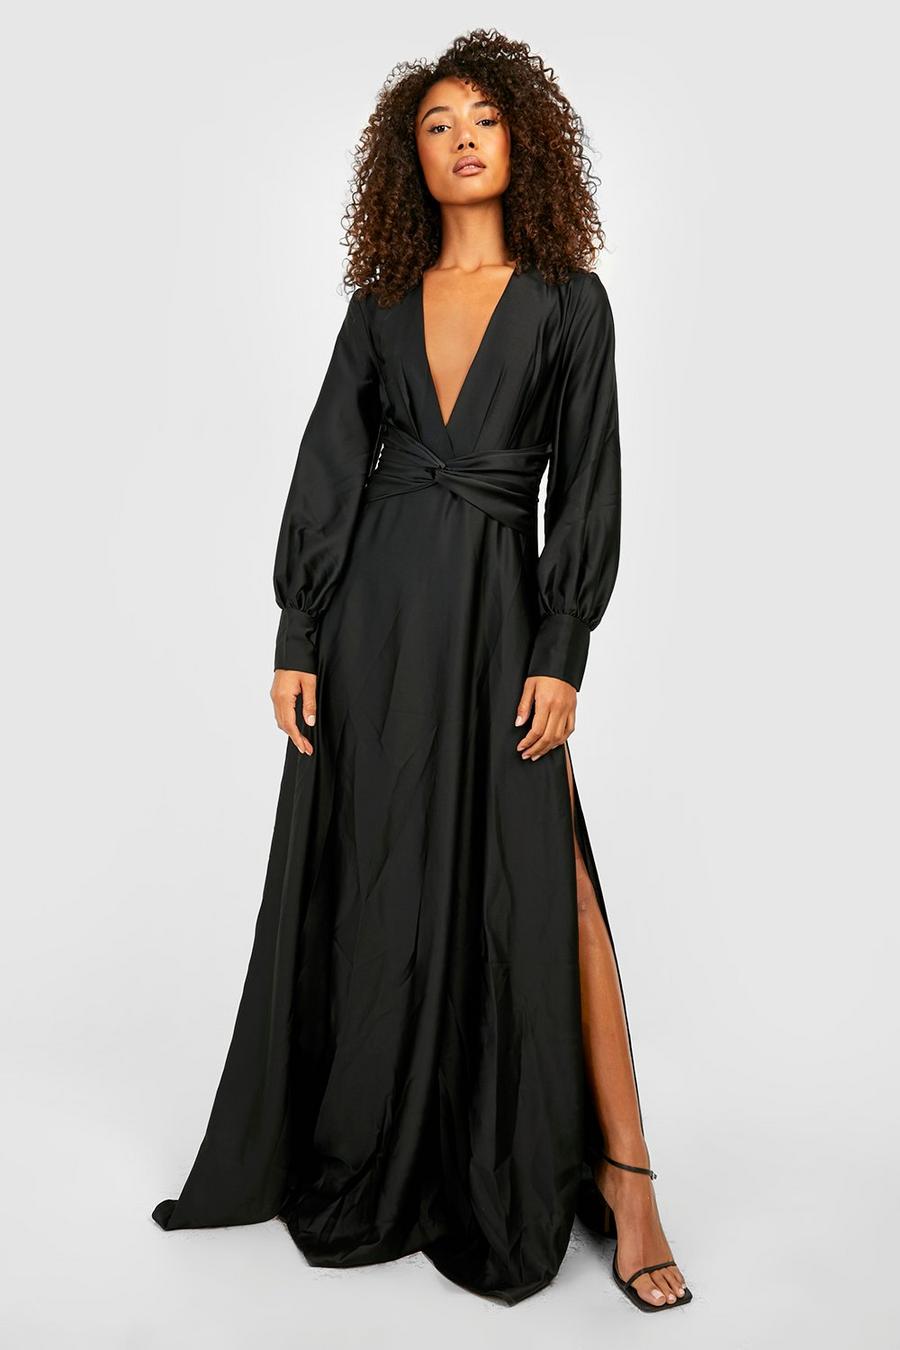 שחור שמלת מקסי מסאטן עם מחשוף ושרוולי בלון, לנשים גבוהות image number 1